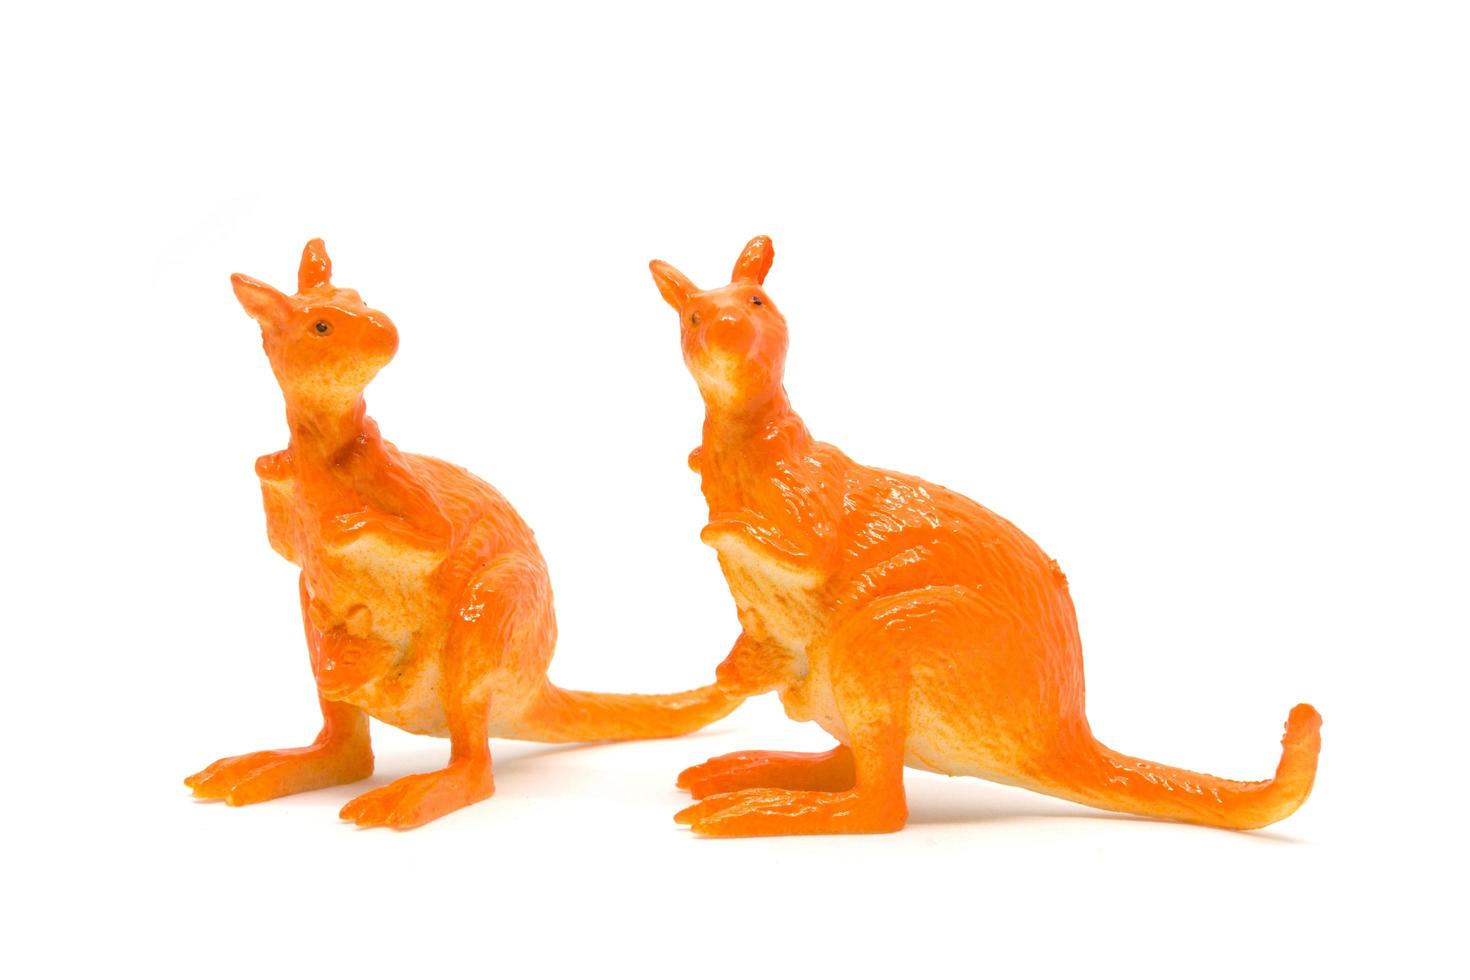 Kangaroo model isolated on white background, animal toys plastic photo